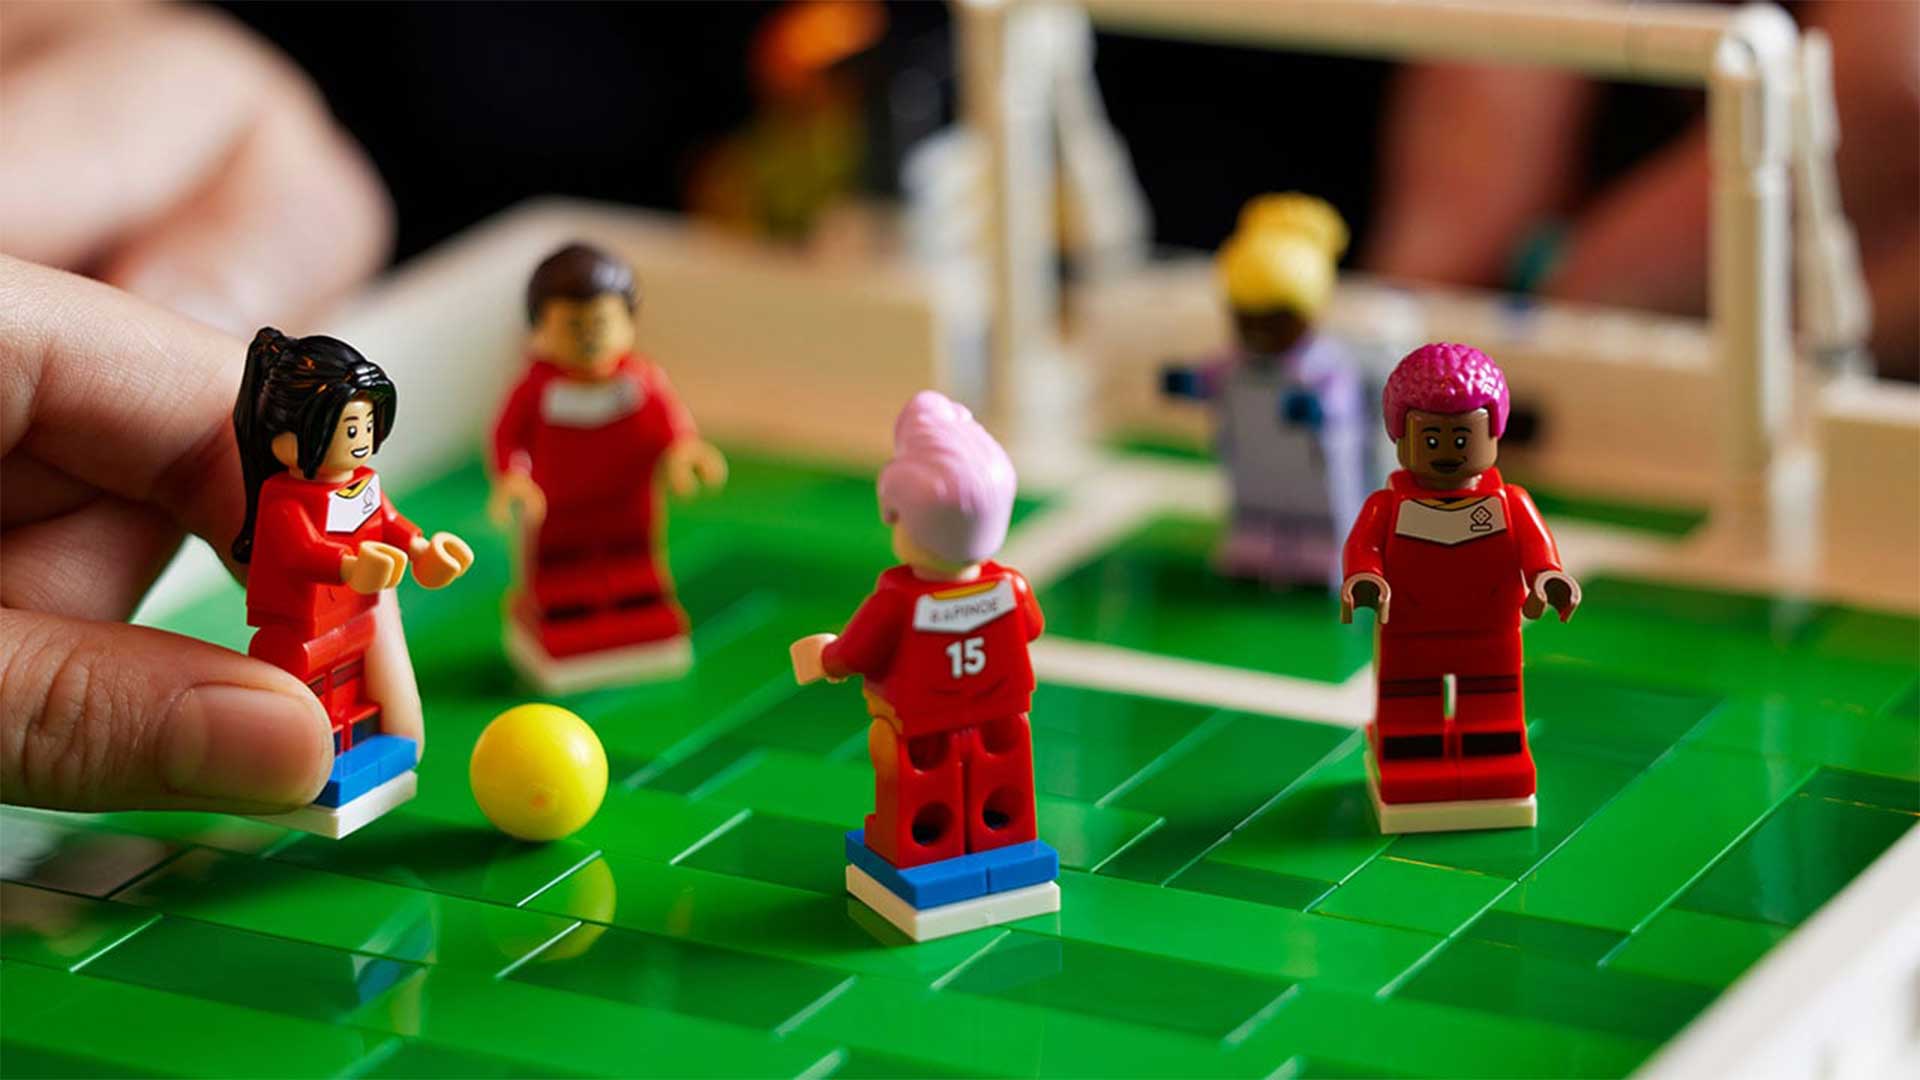 بازی LEGO 2K Goooal در کشور تایوان رده بندی سنی شد